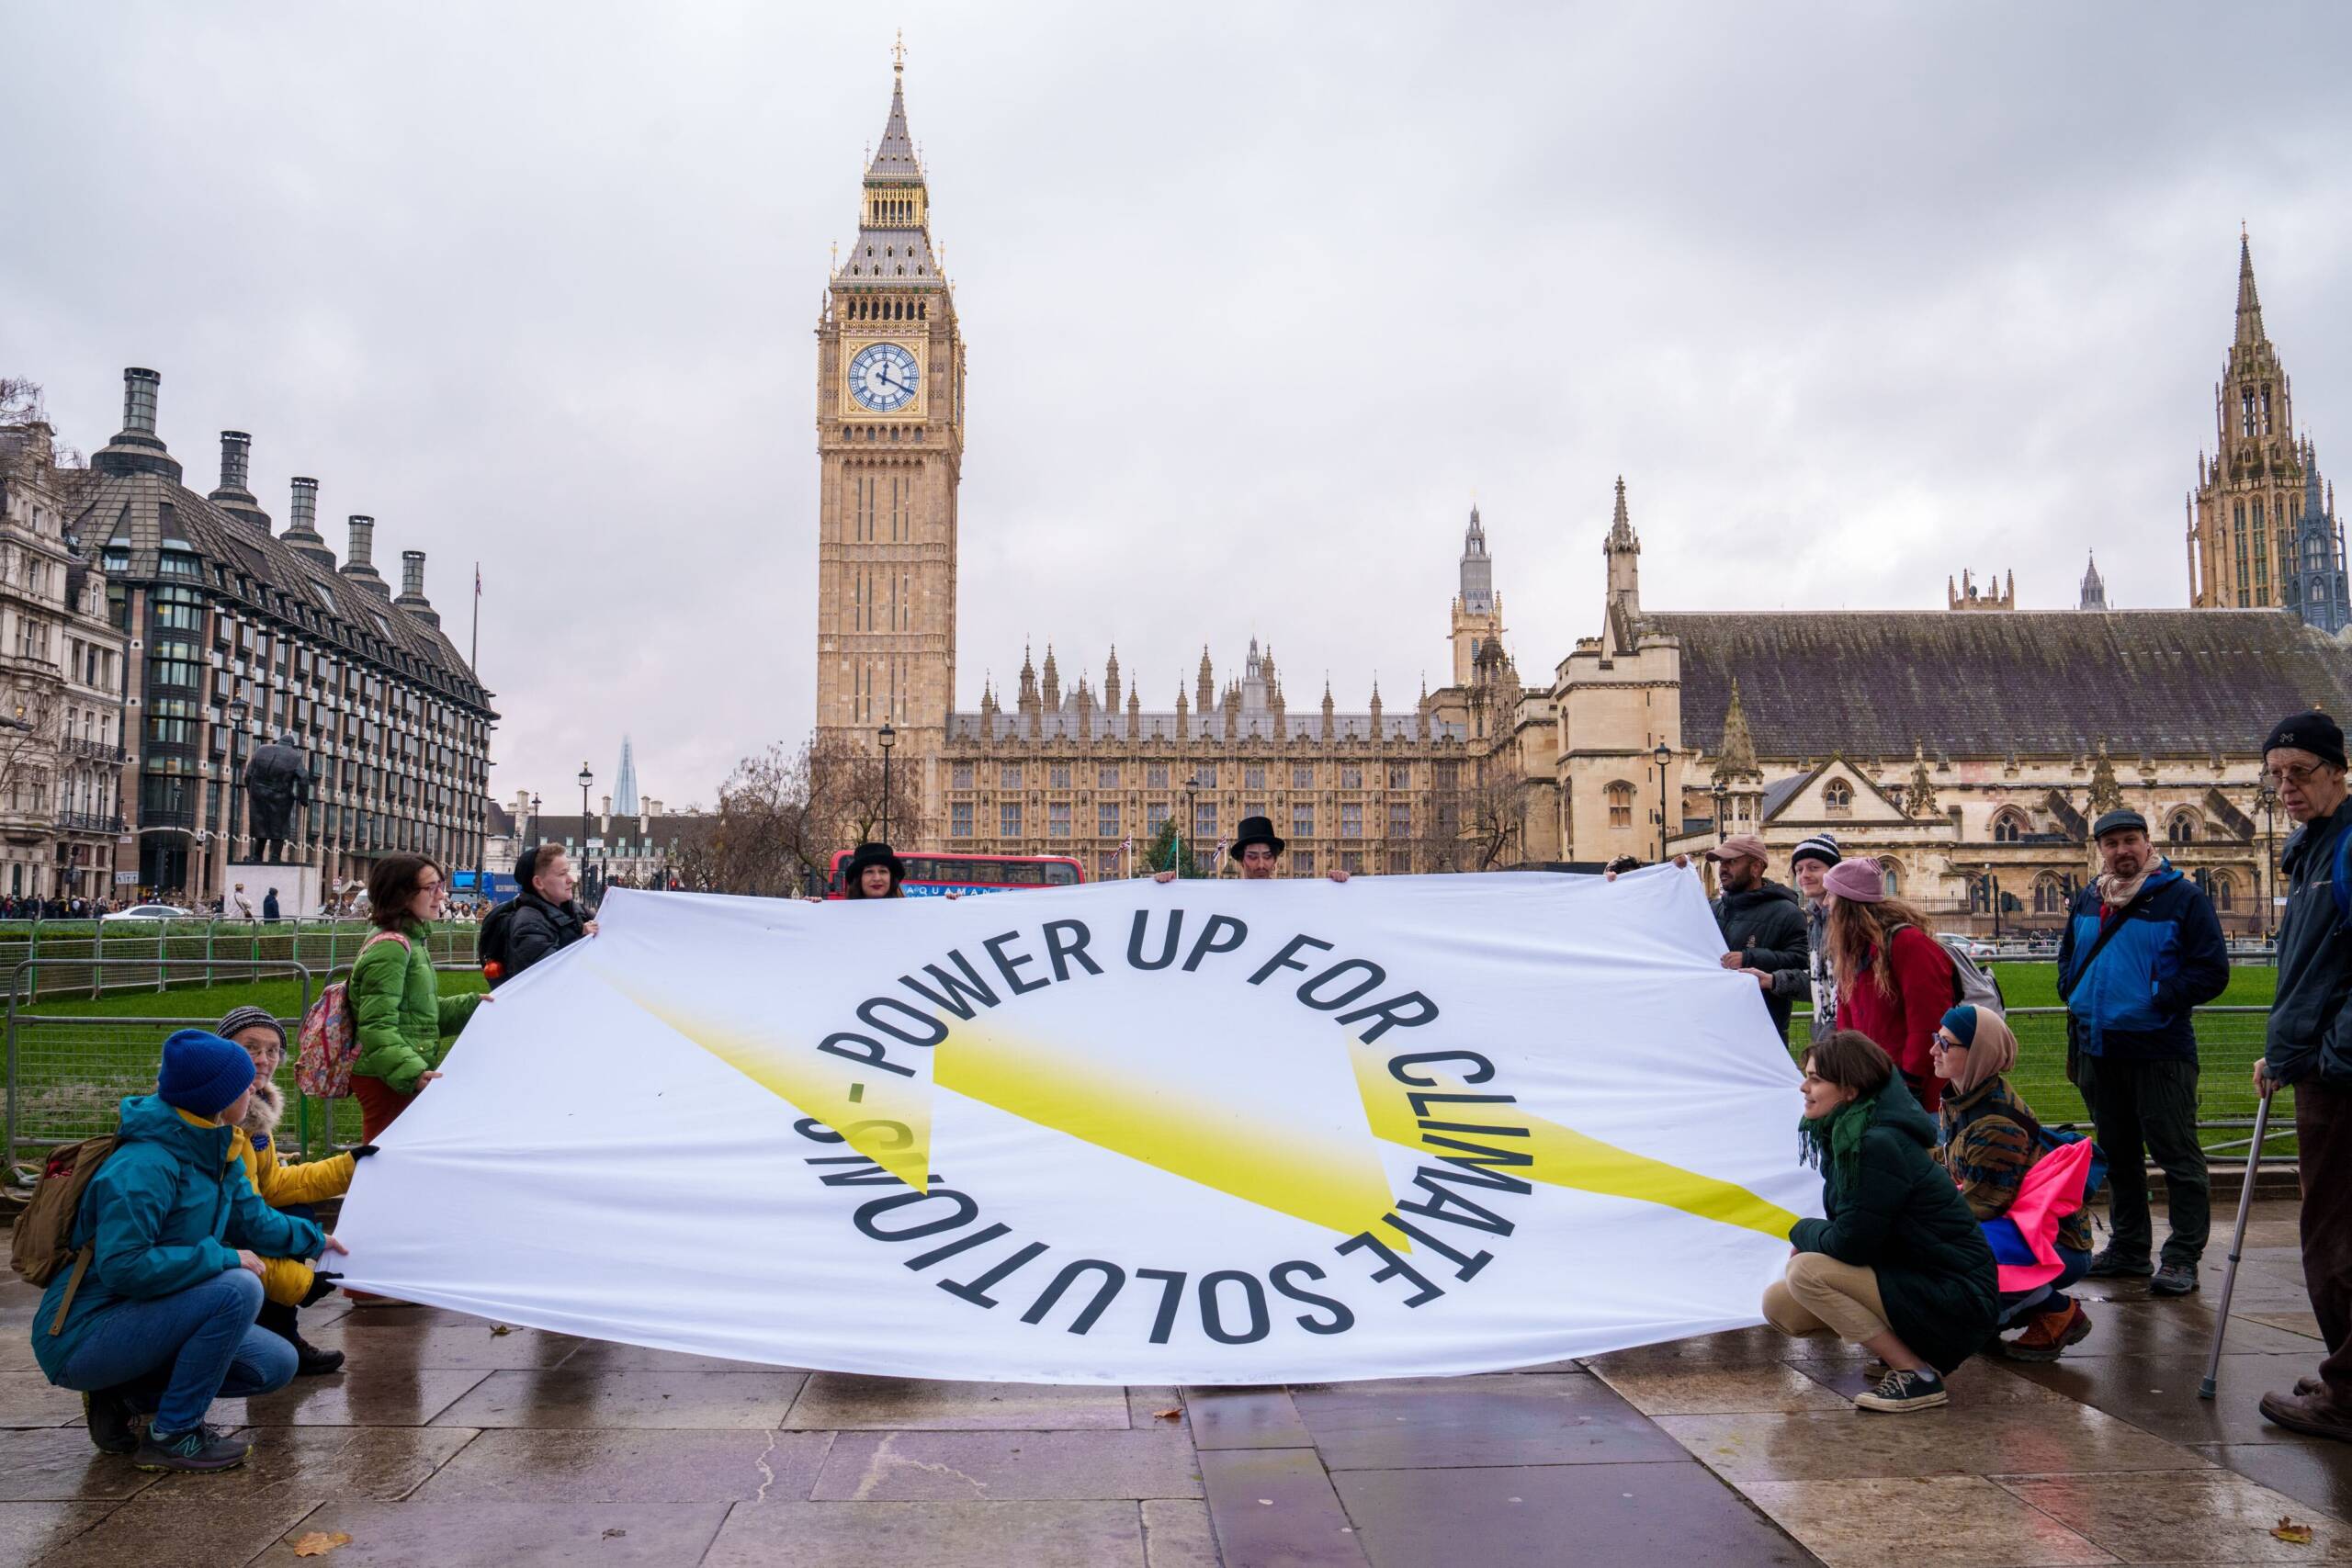 Birleşik Krallık, Londra, 5 Aralık: Aktivistler, taleplerimize dair farkındalık oluşturmak için Güç Ver pankartını Londra'nın simgesel yerlerine taşıdı: Fosil yakıt şirketleri çevremize ve ekonomilerimize verdikleri zararın bedelini ödemeli ve yenilenebilir enerji kaynaklarına adil bir geçiş gerçekleştirilmeli. Fotoğraf: James Klug